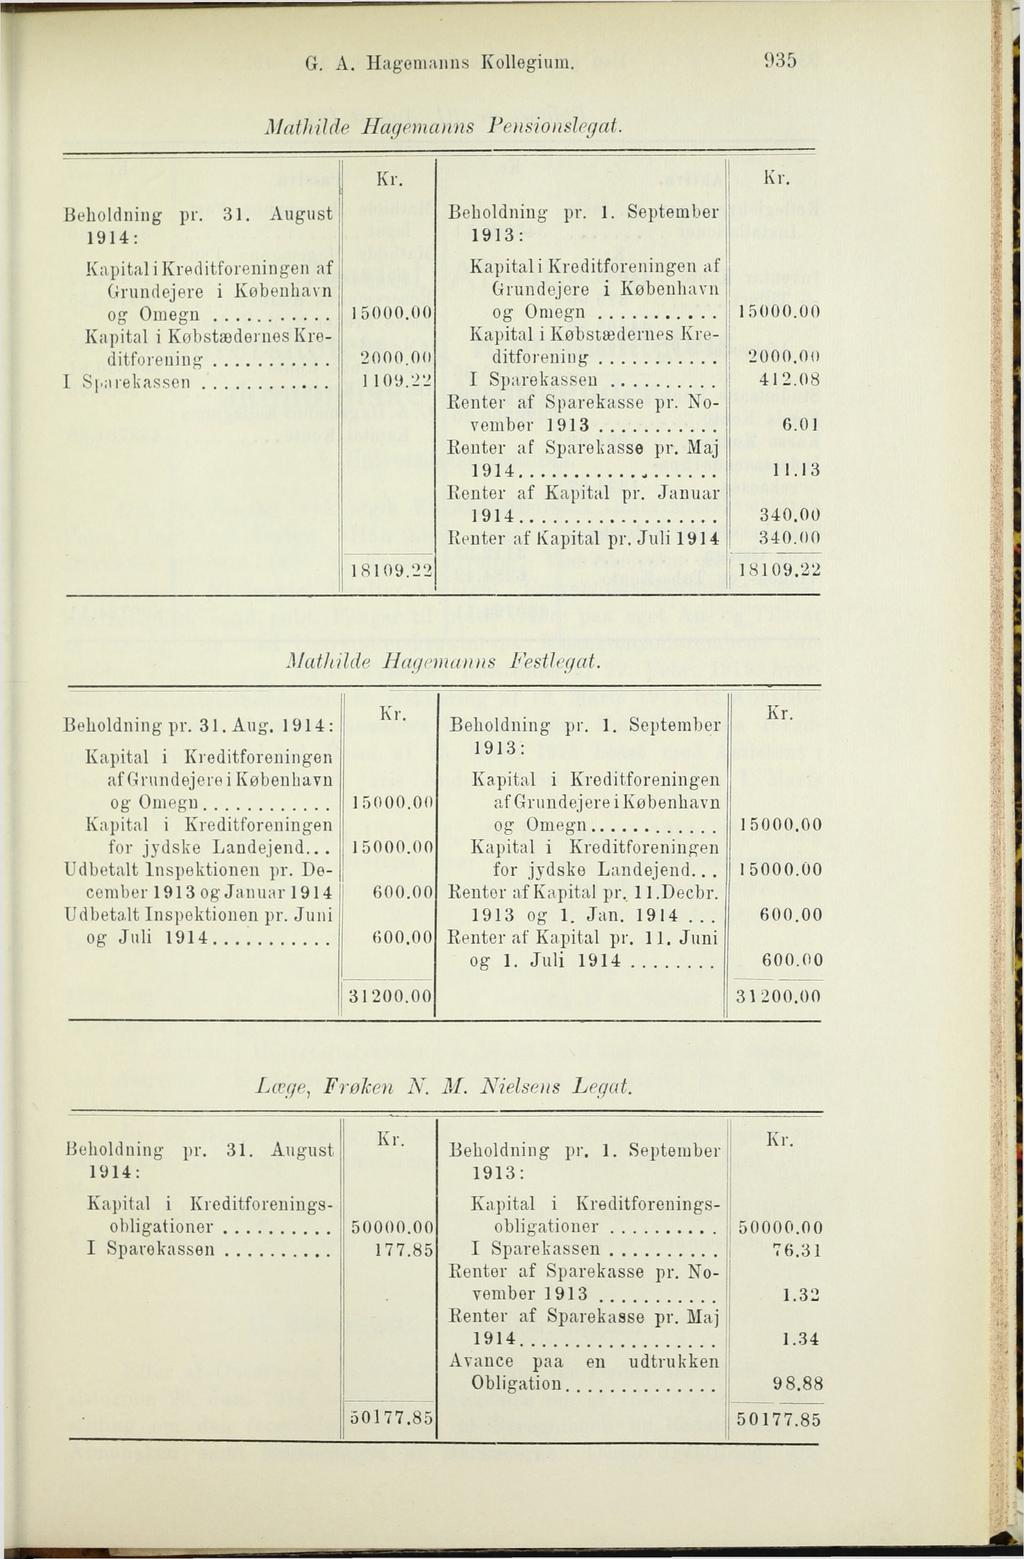 G. A. Hagemanns Kollegium. 935 Mathilde Hagemanns Pensionslegat. Beholdning pi". 1914: 31.